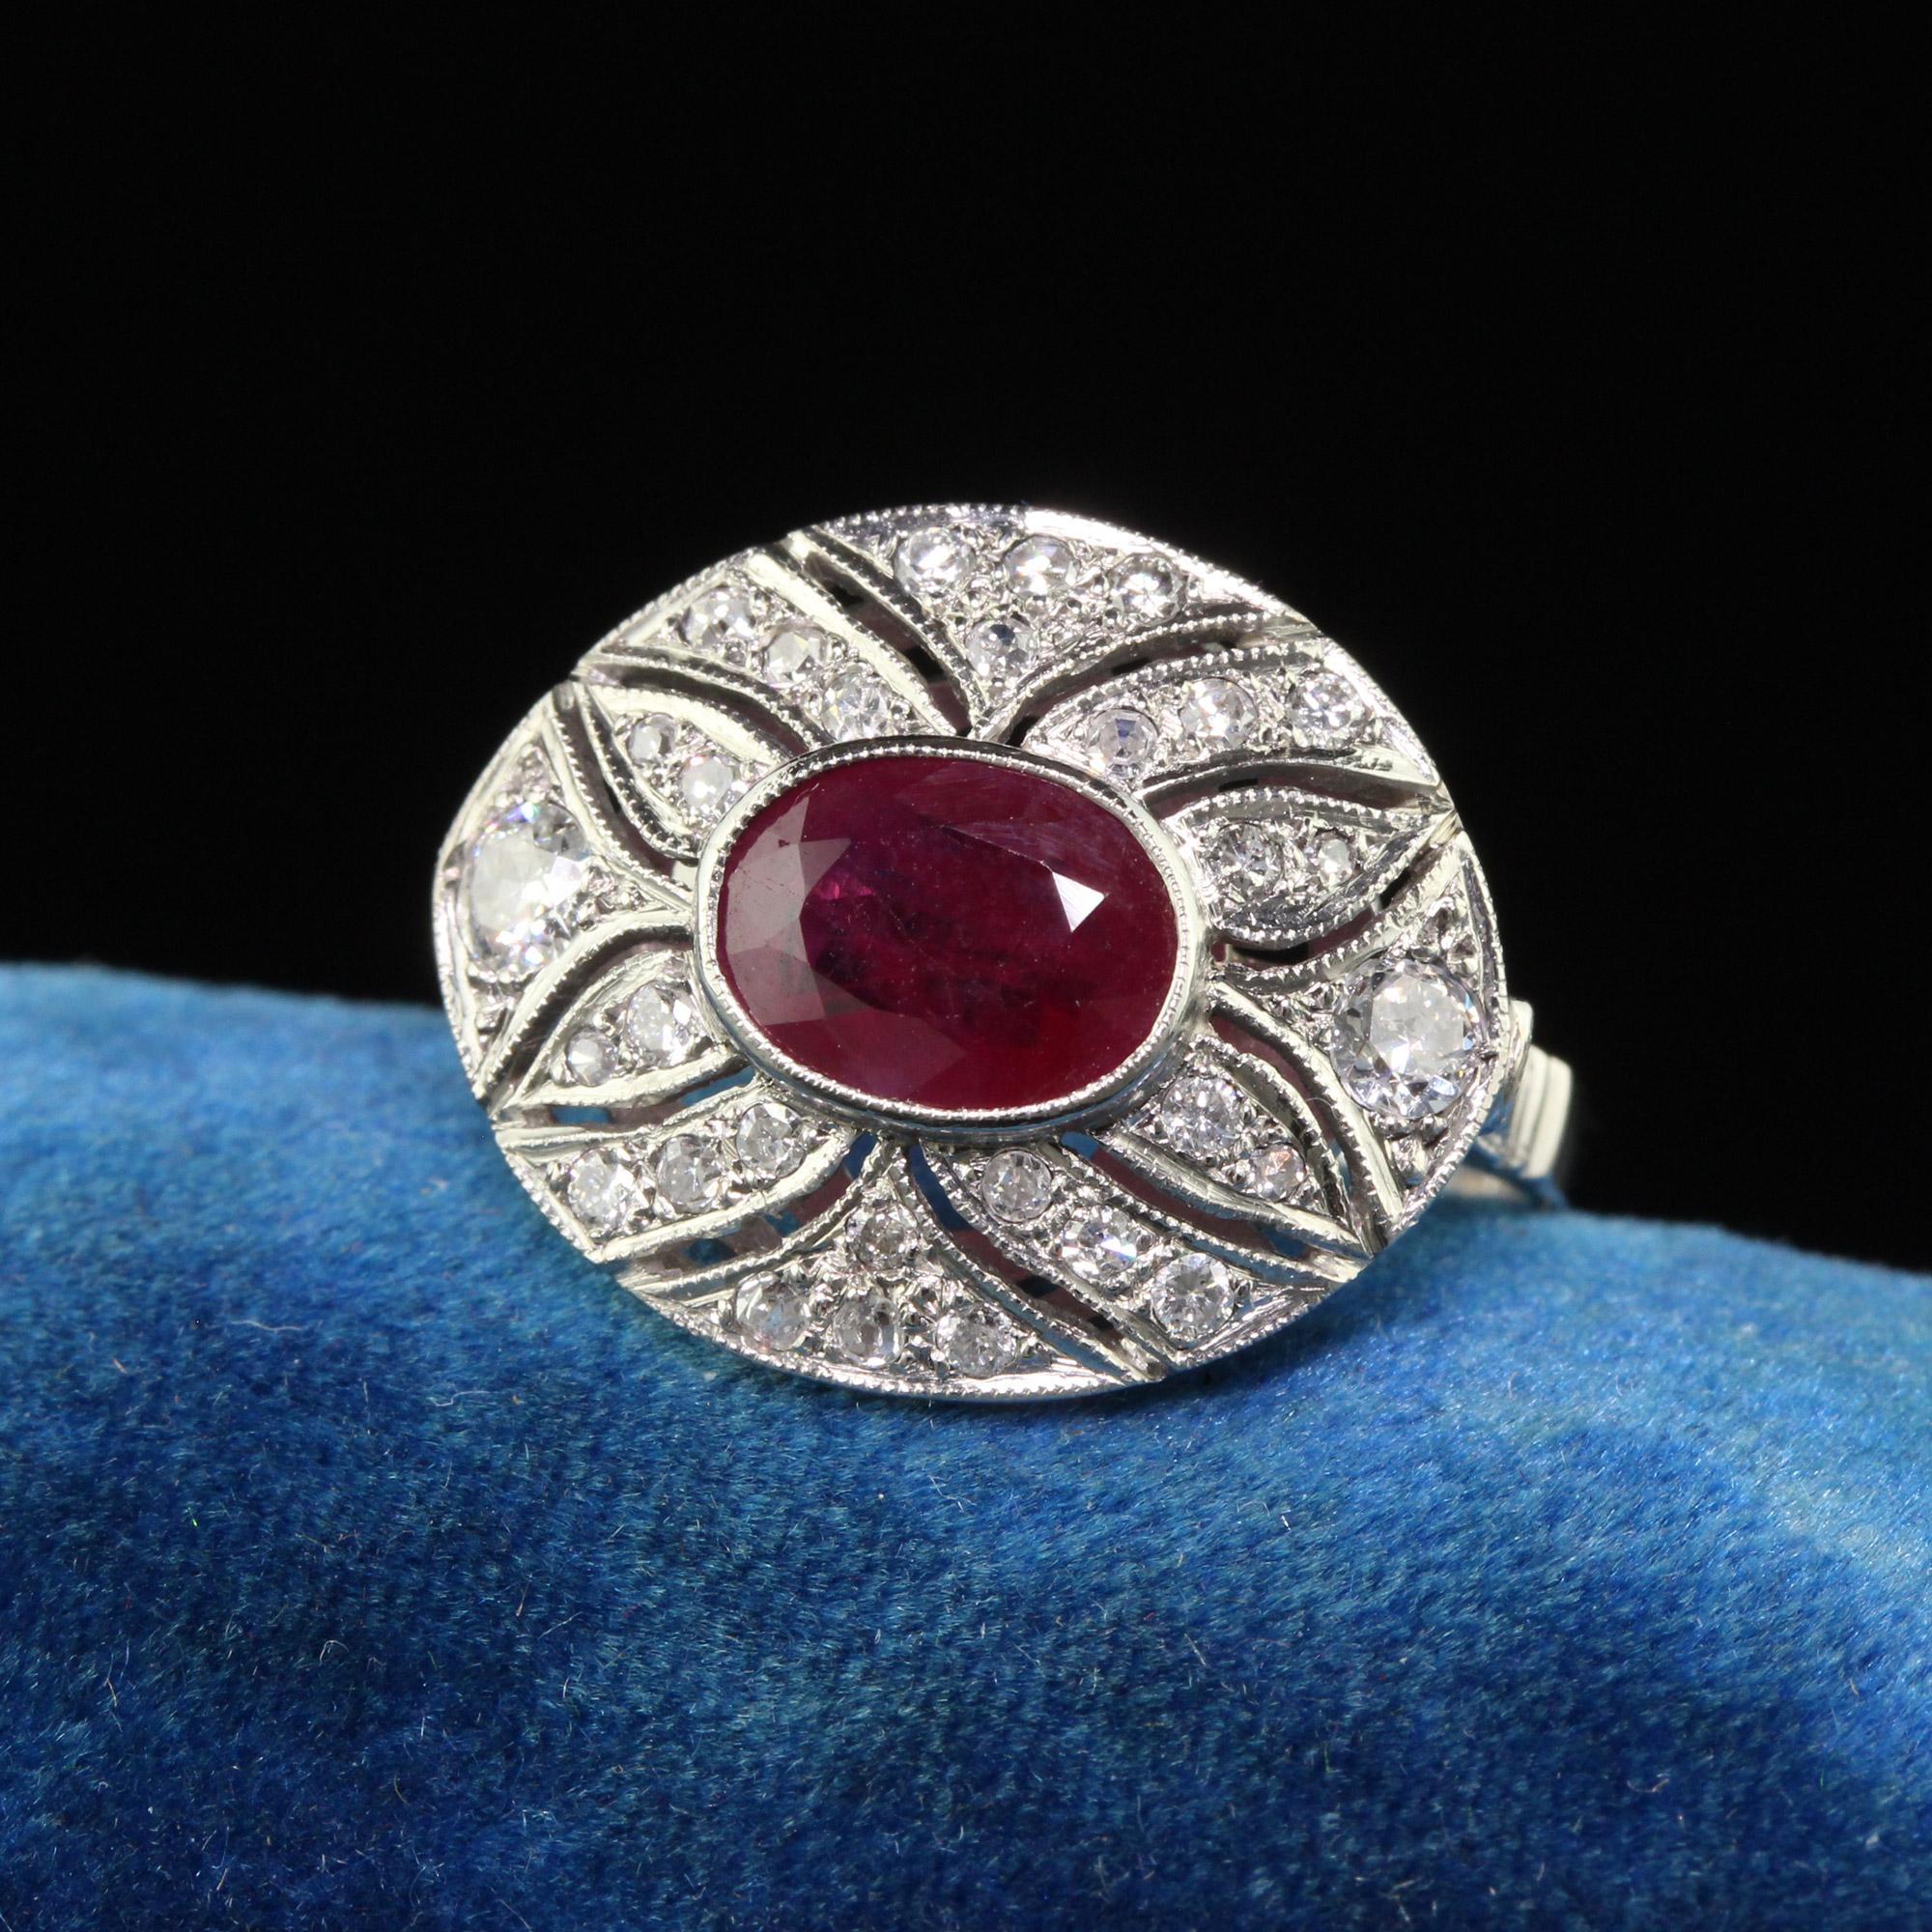 Schöner zeitgenössischer Art Deco Stil Platin Rubin und Diamant Cocktail Ring. Dieser schöne Ring ist aus Platin gefertigt. In der Mitte befindet sich ein natürlicher roter Rubin, der von weißen Diamanten im Einzelschliff umgeben ist. Die